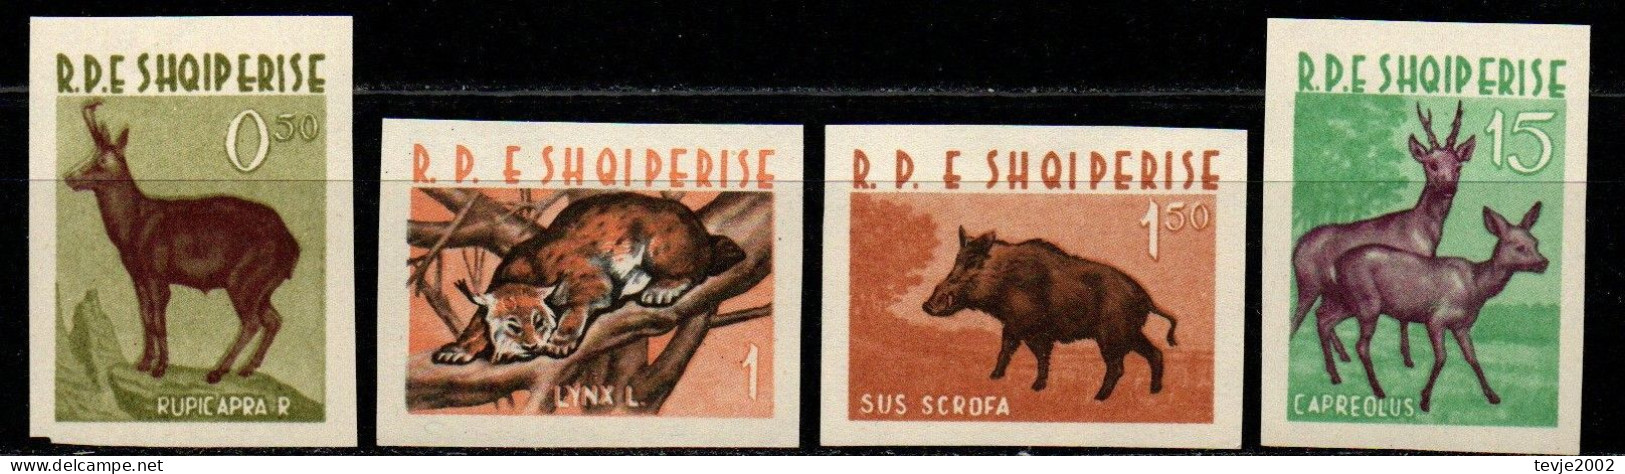 Albanien 1962 - Mi.Nr. 704 - 707 - Postfrisch MNH - Tiere Animals - Wild